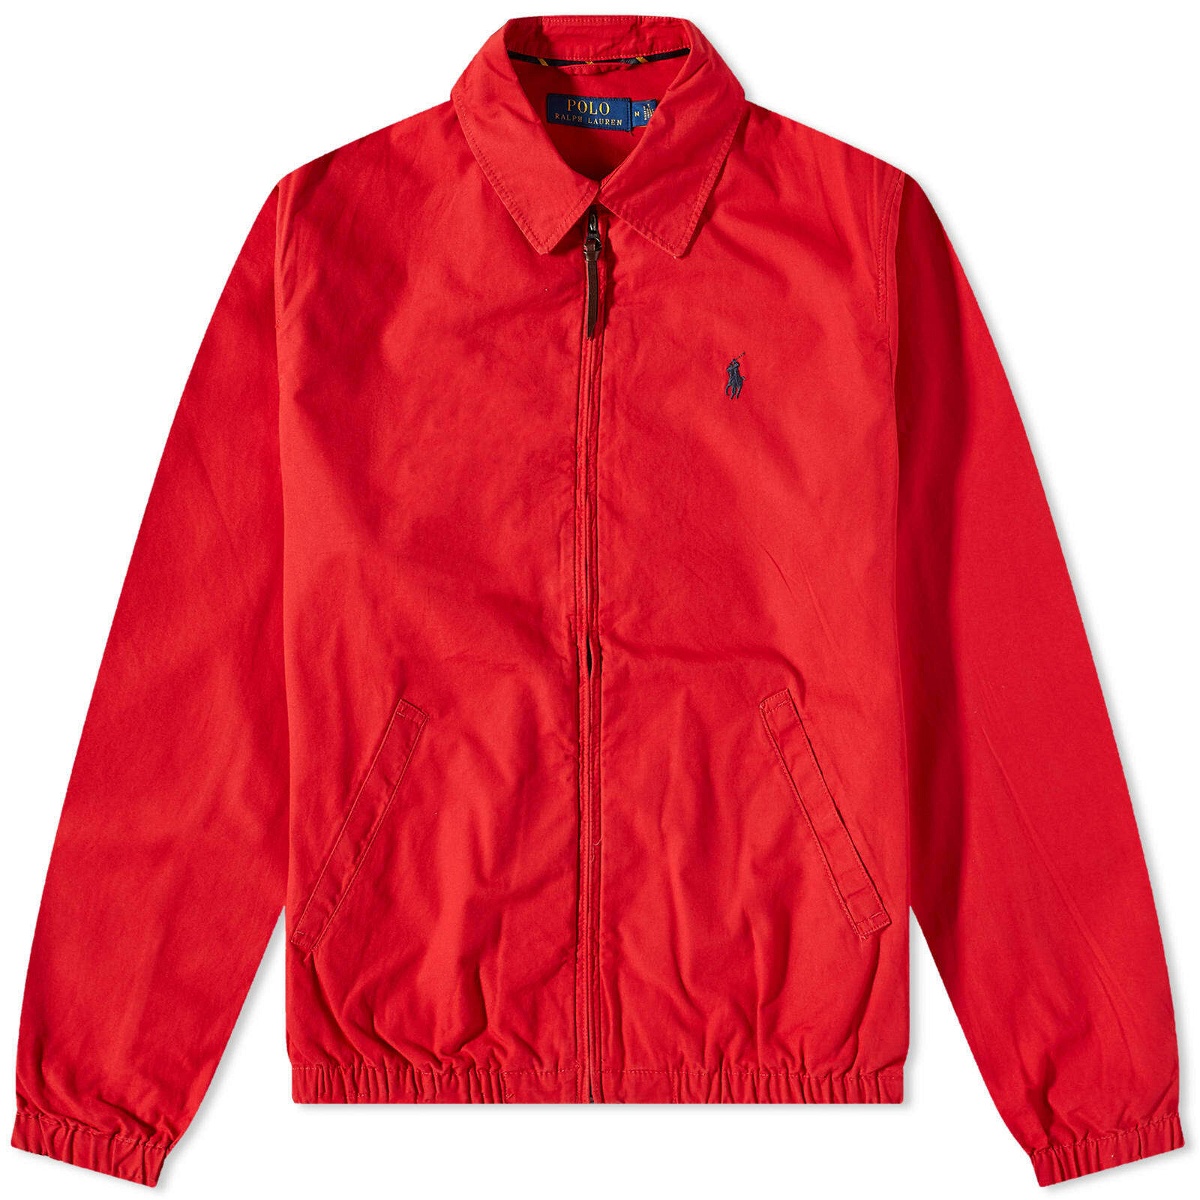 Polo Ralph Lauren Men's Bayport Jacket in Red Polo Ralph Lauren